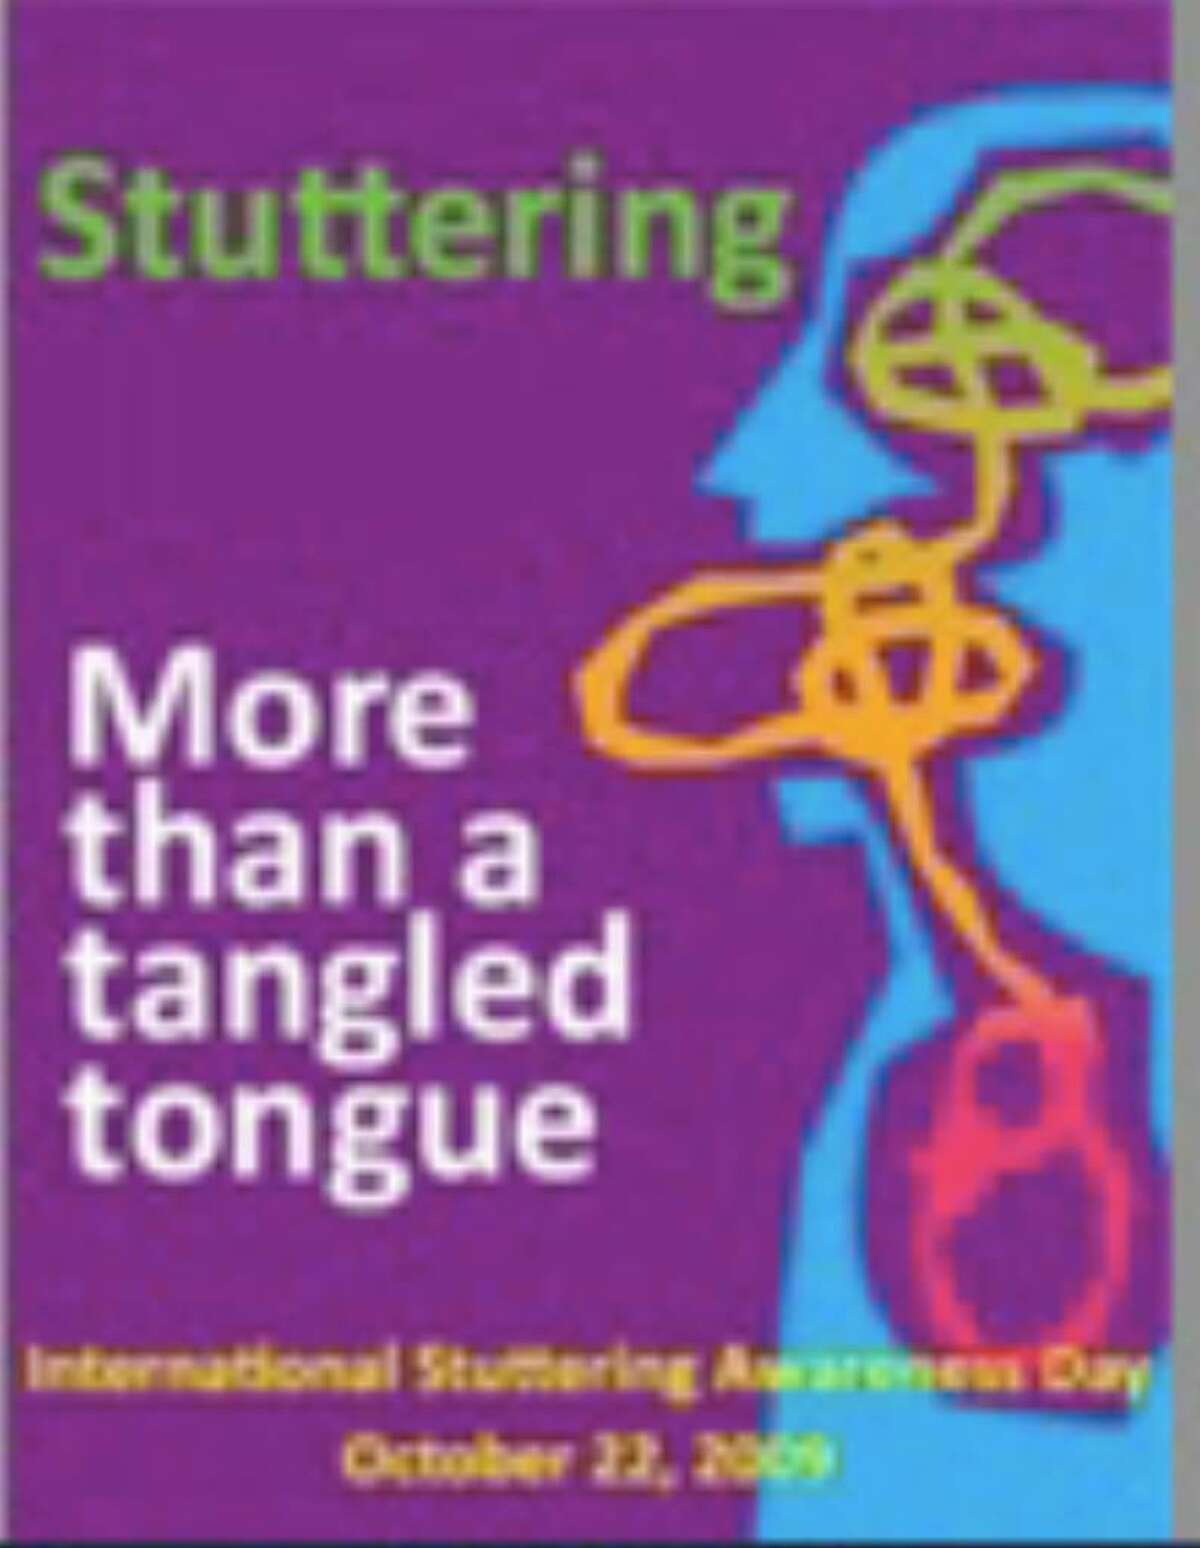 The International Stuttering Awarenss Day logo. (Courtesy of Judith Kuster, University of Minnesota at Mankato)